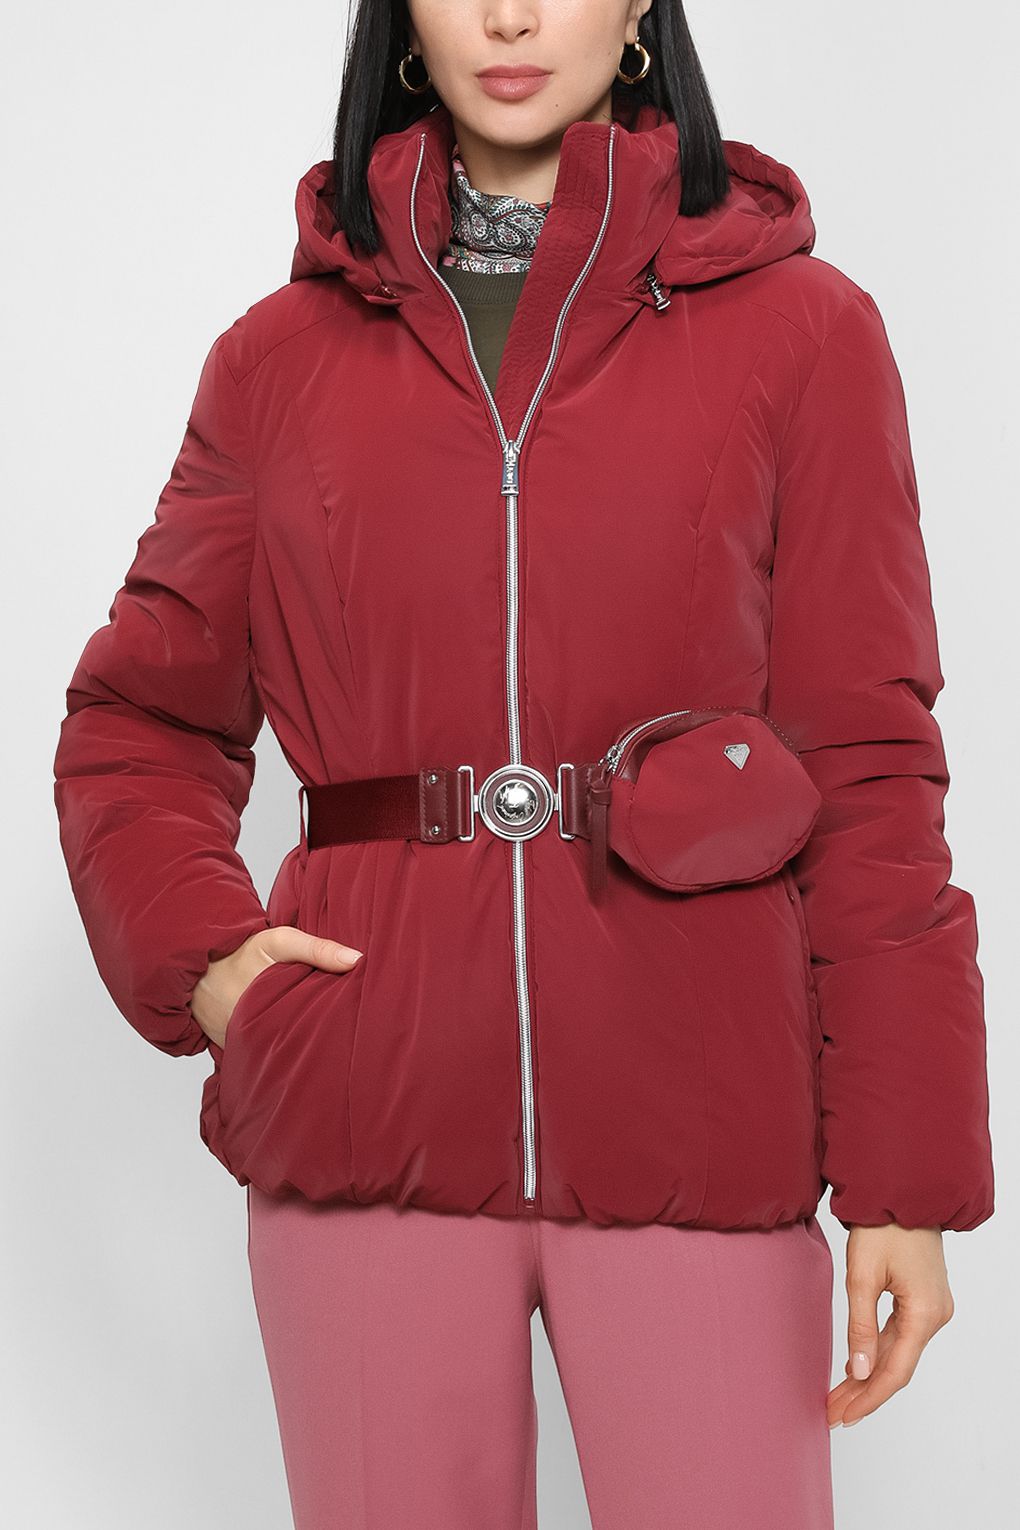 Куртка женская Loft LF2030287 бордовая M